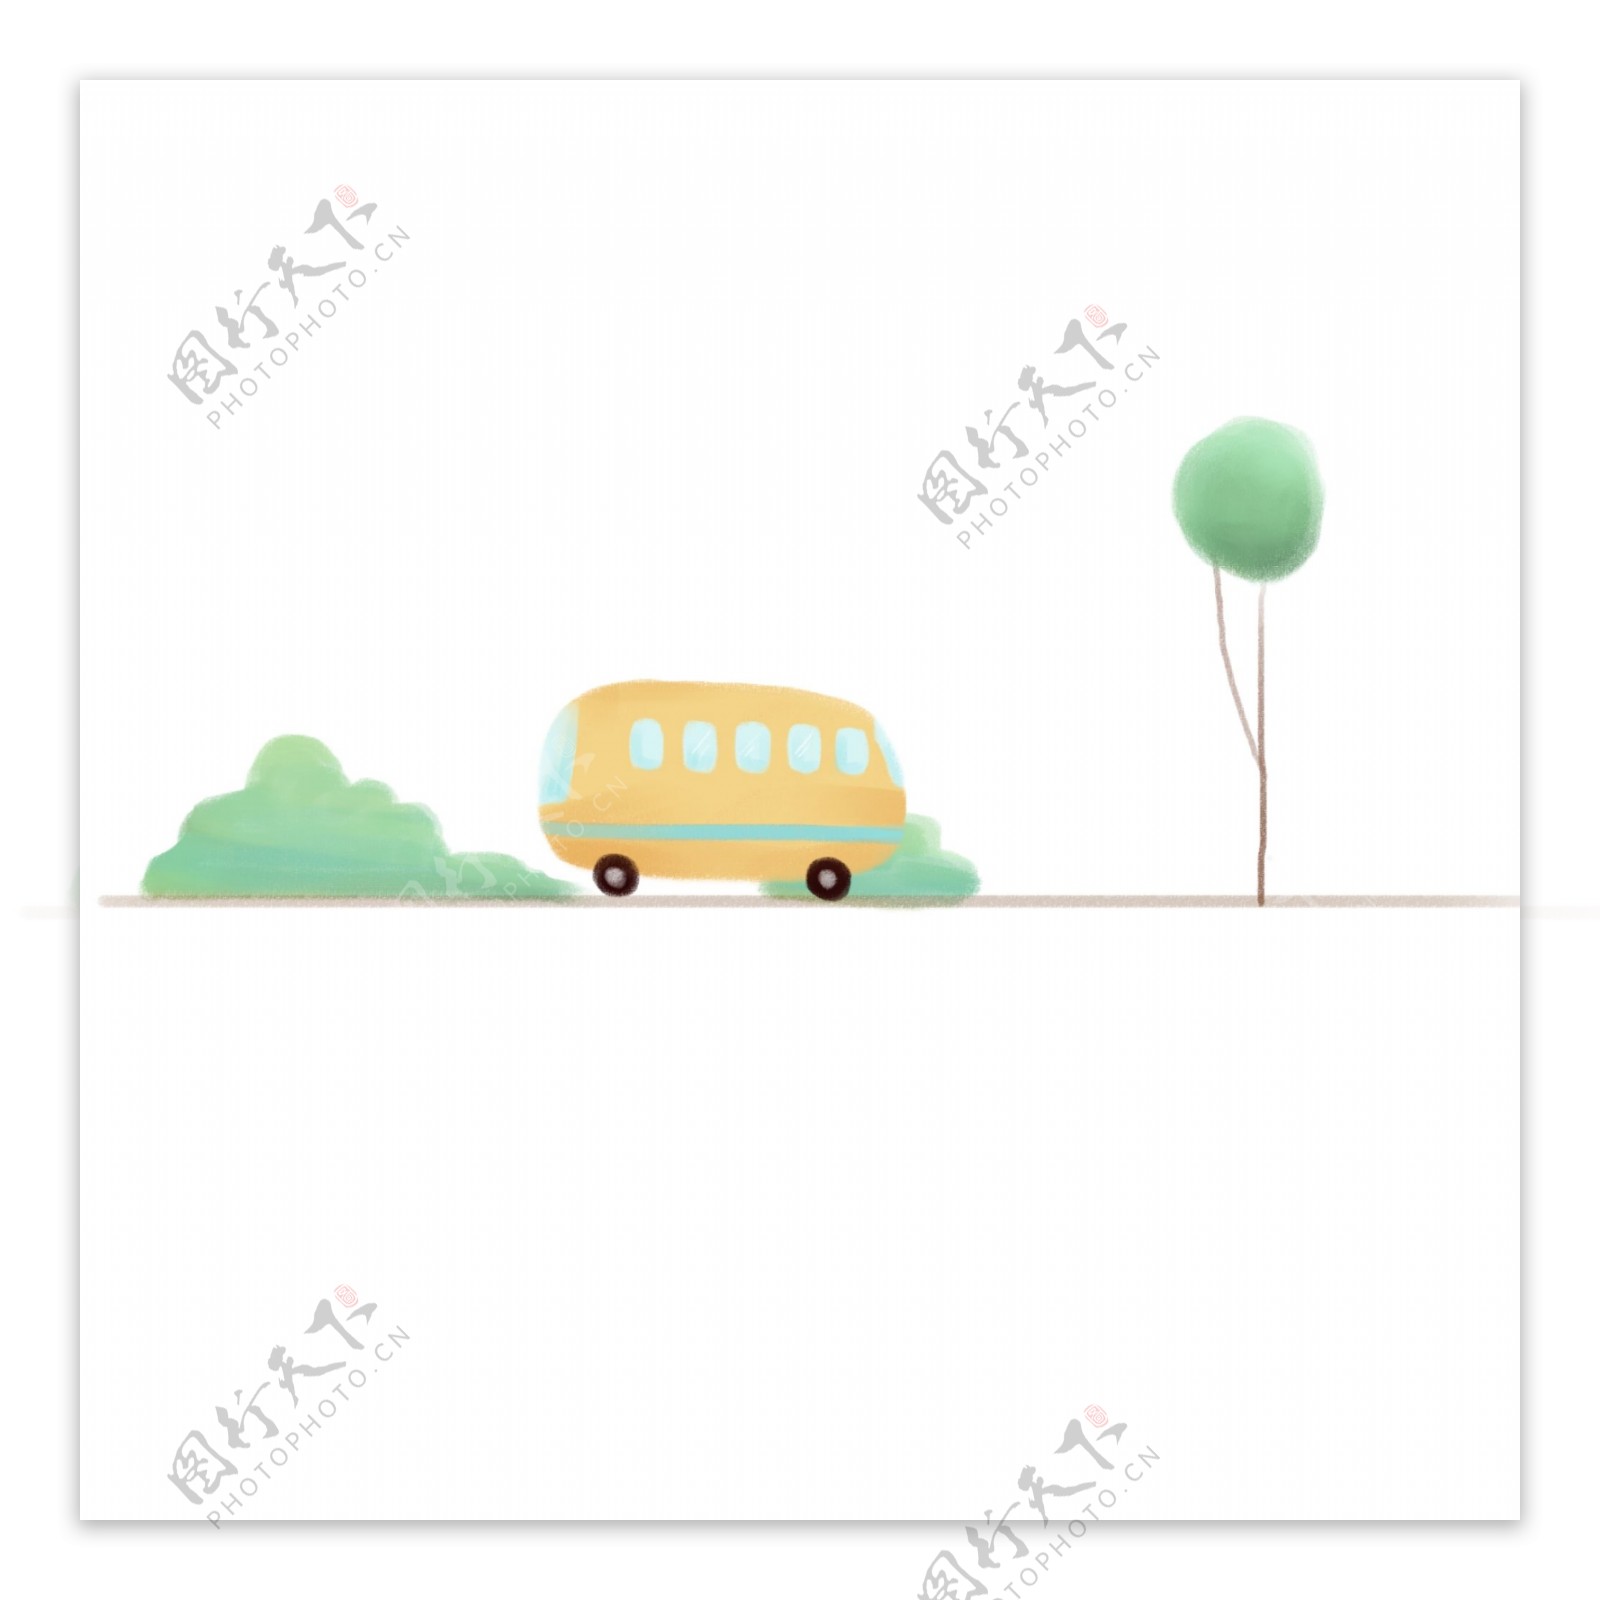 树木车辆分割线插画